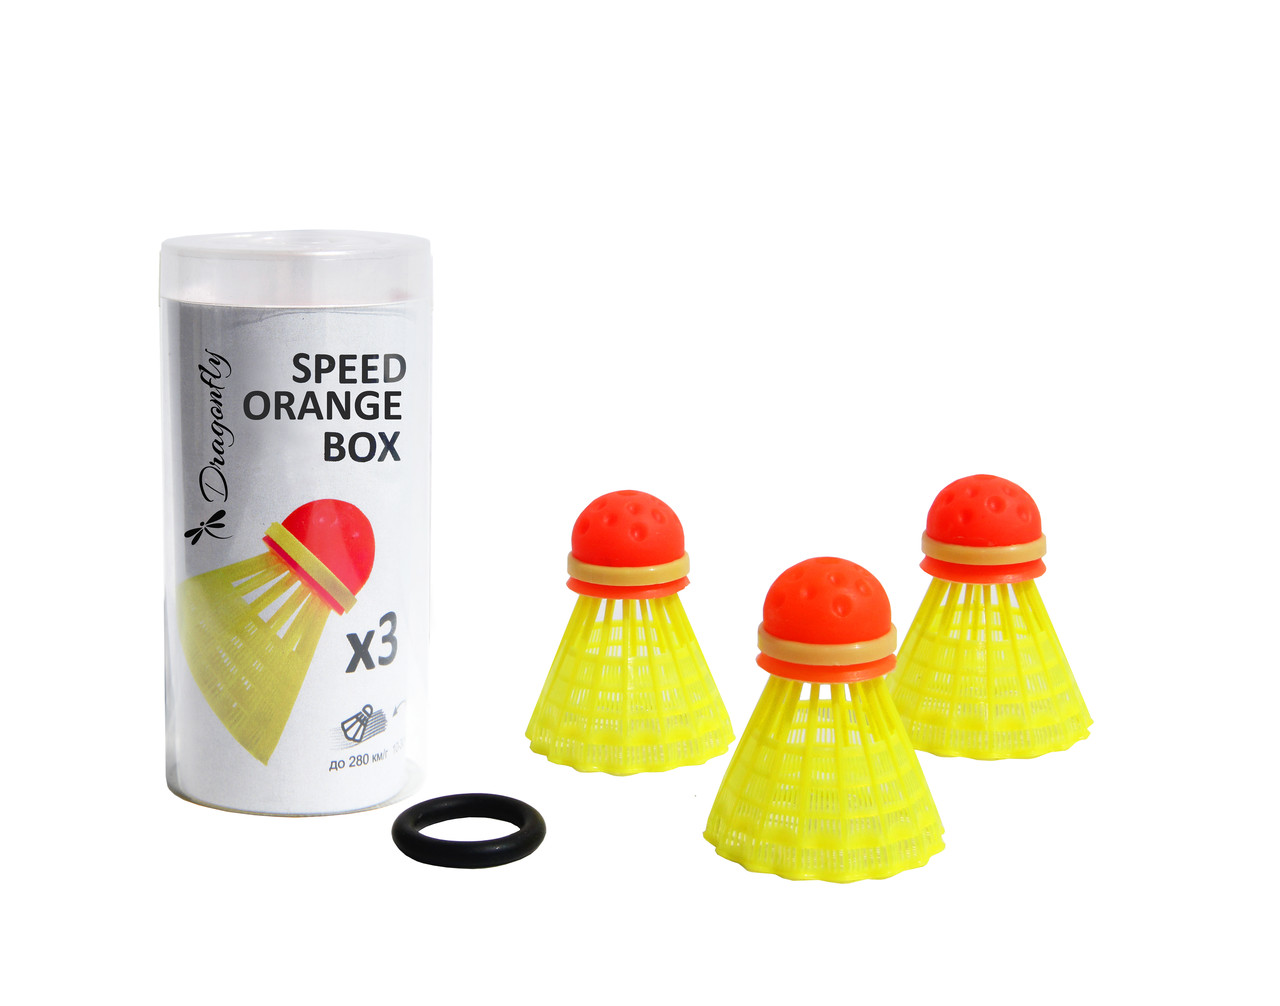  воланов для спидминтона Dragonfly Speed Orange Box (3 шт .